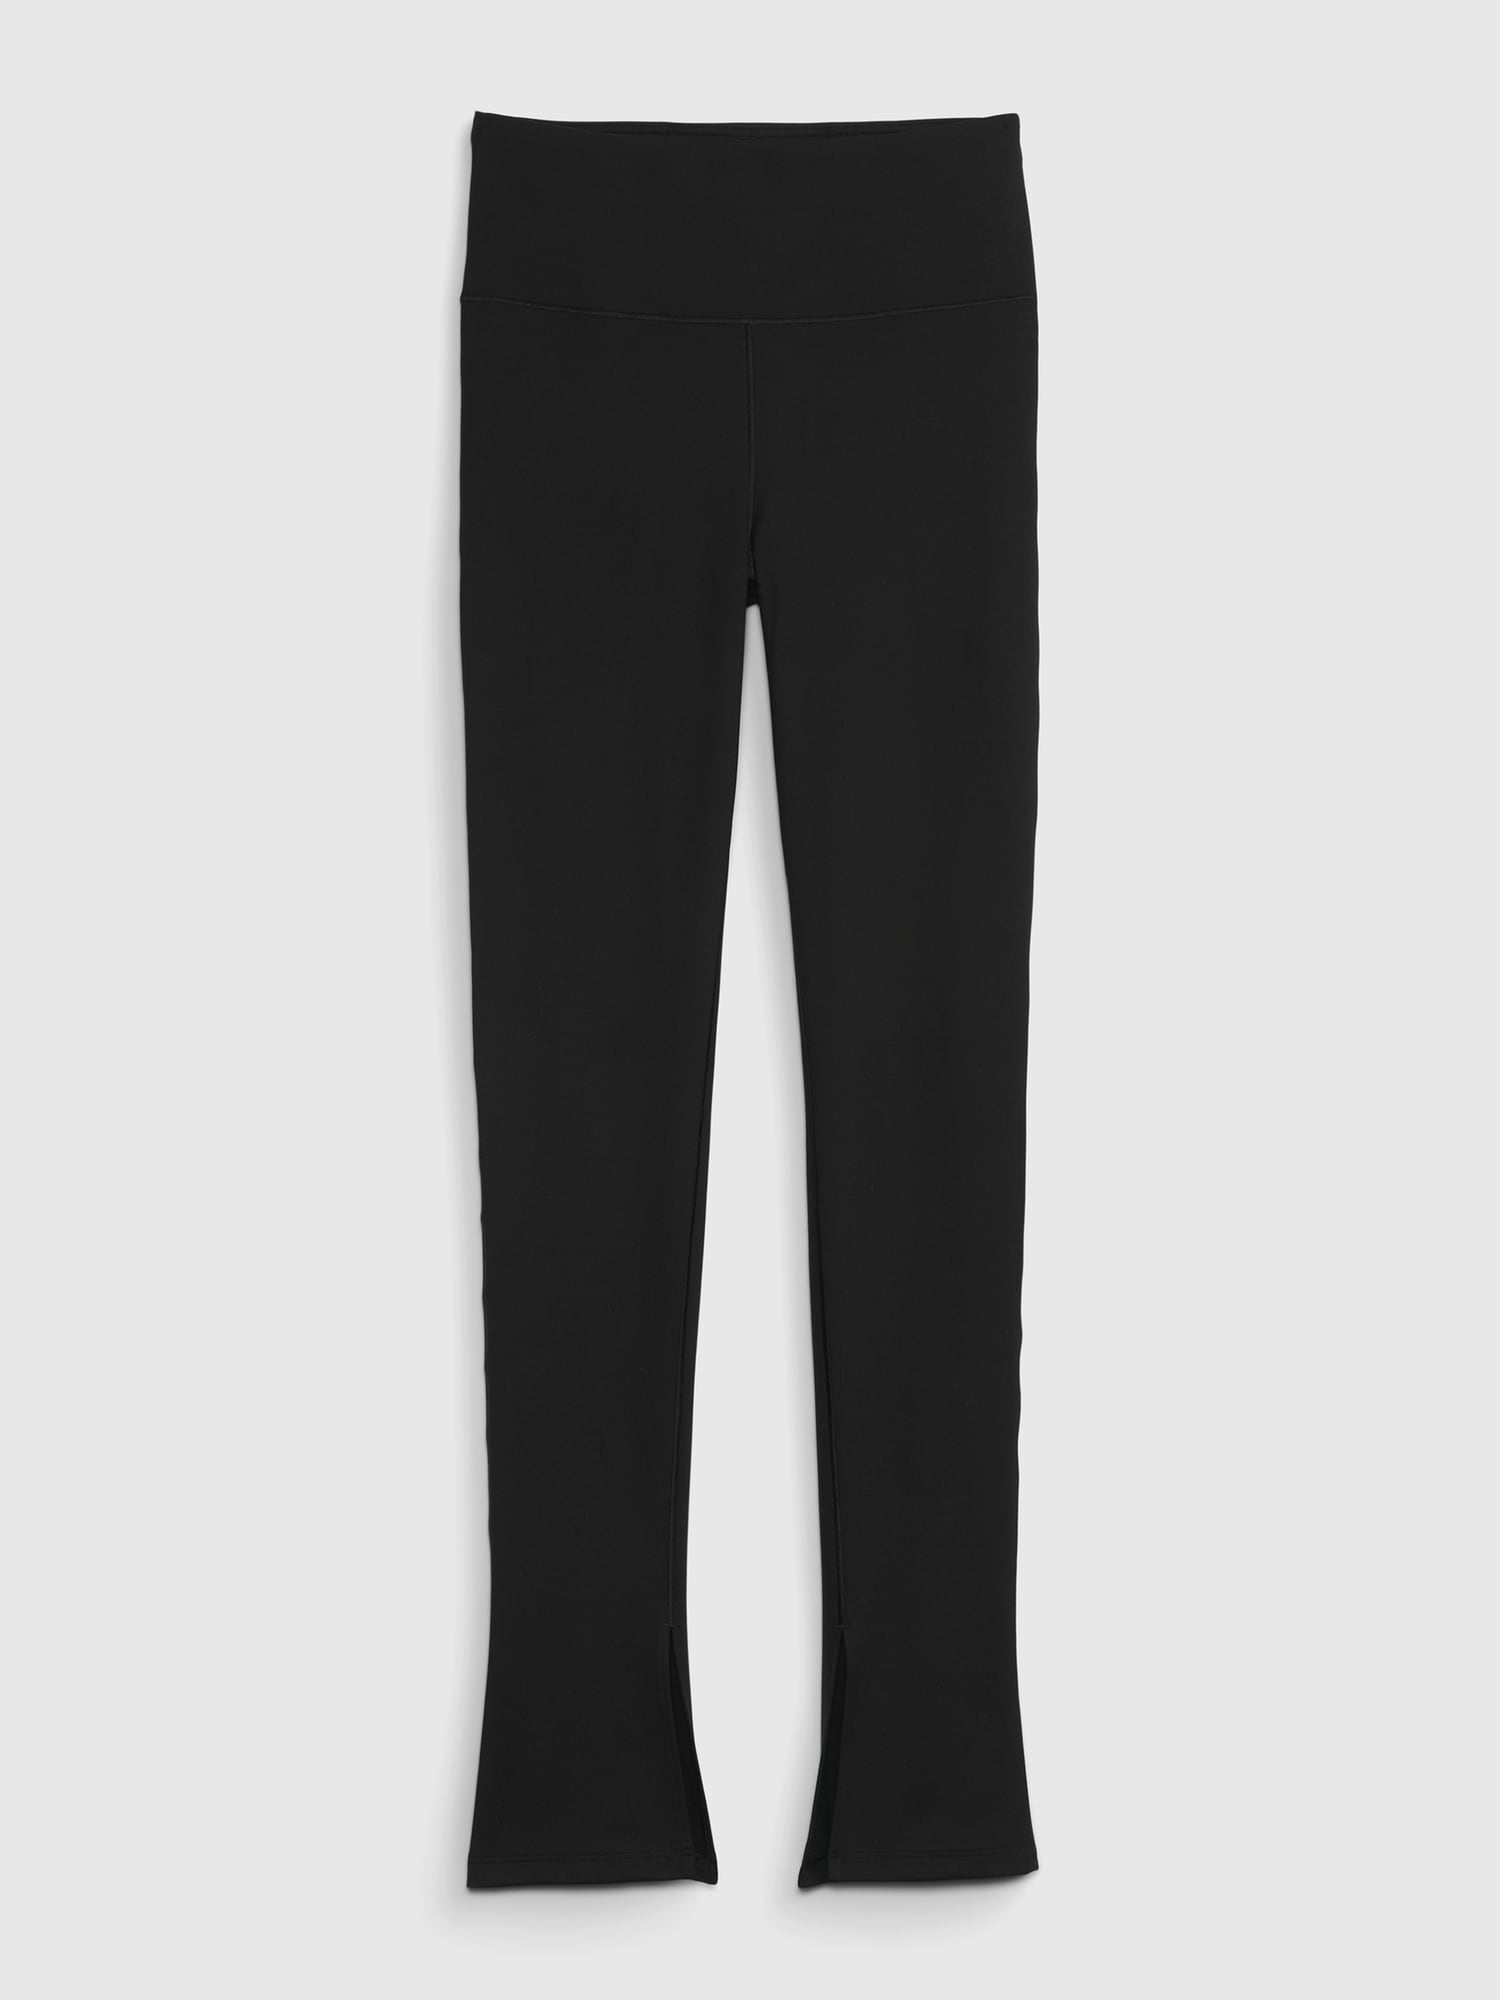 Gap Fit Outlet Color Block Polka Dots Black Active Pants Size XL